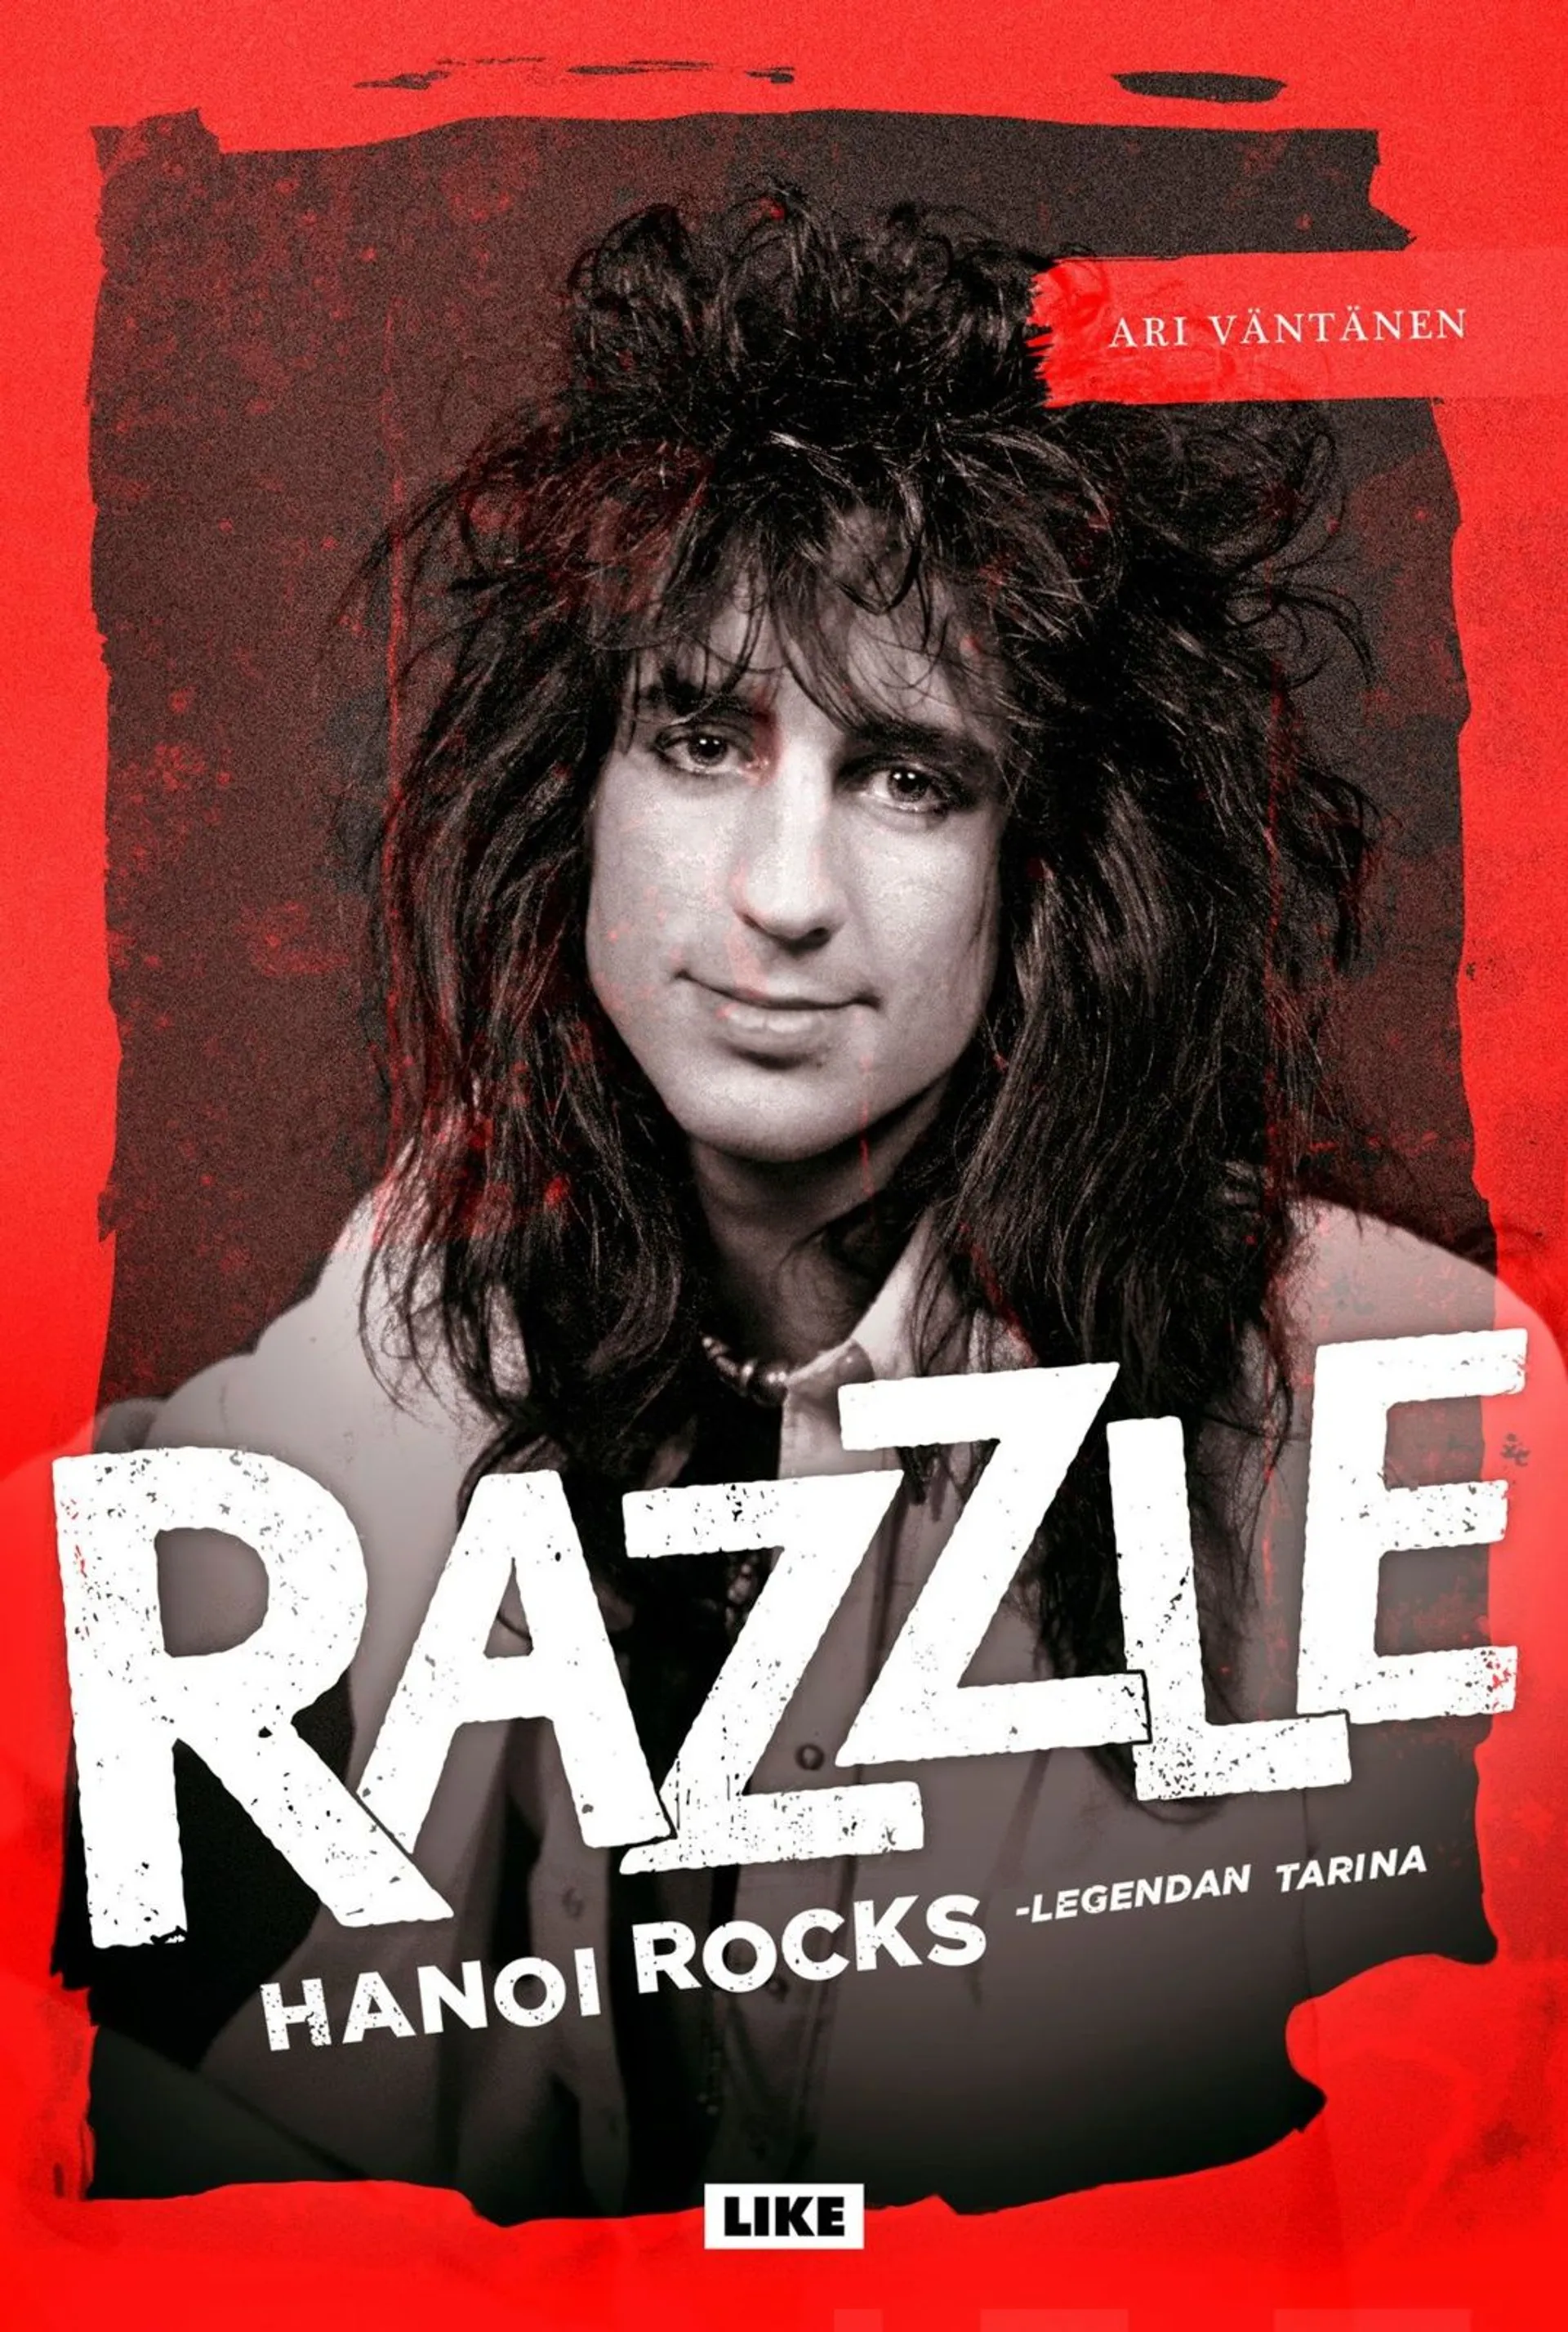 Väntänen, Razzle - Hanoi Rocks -legendan tarina